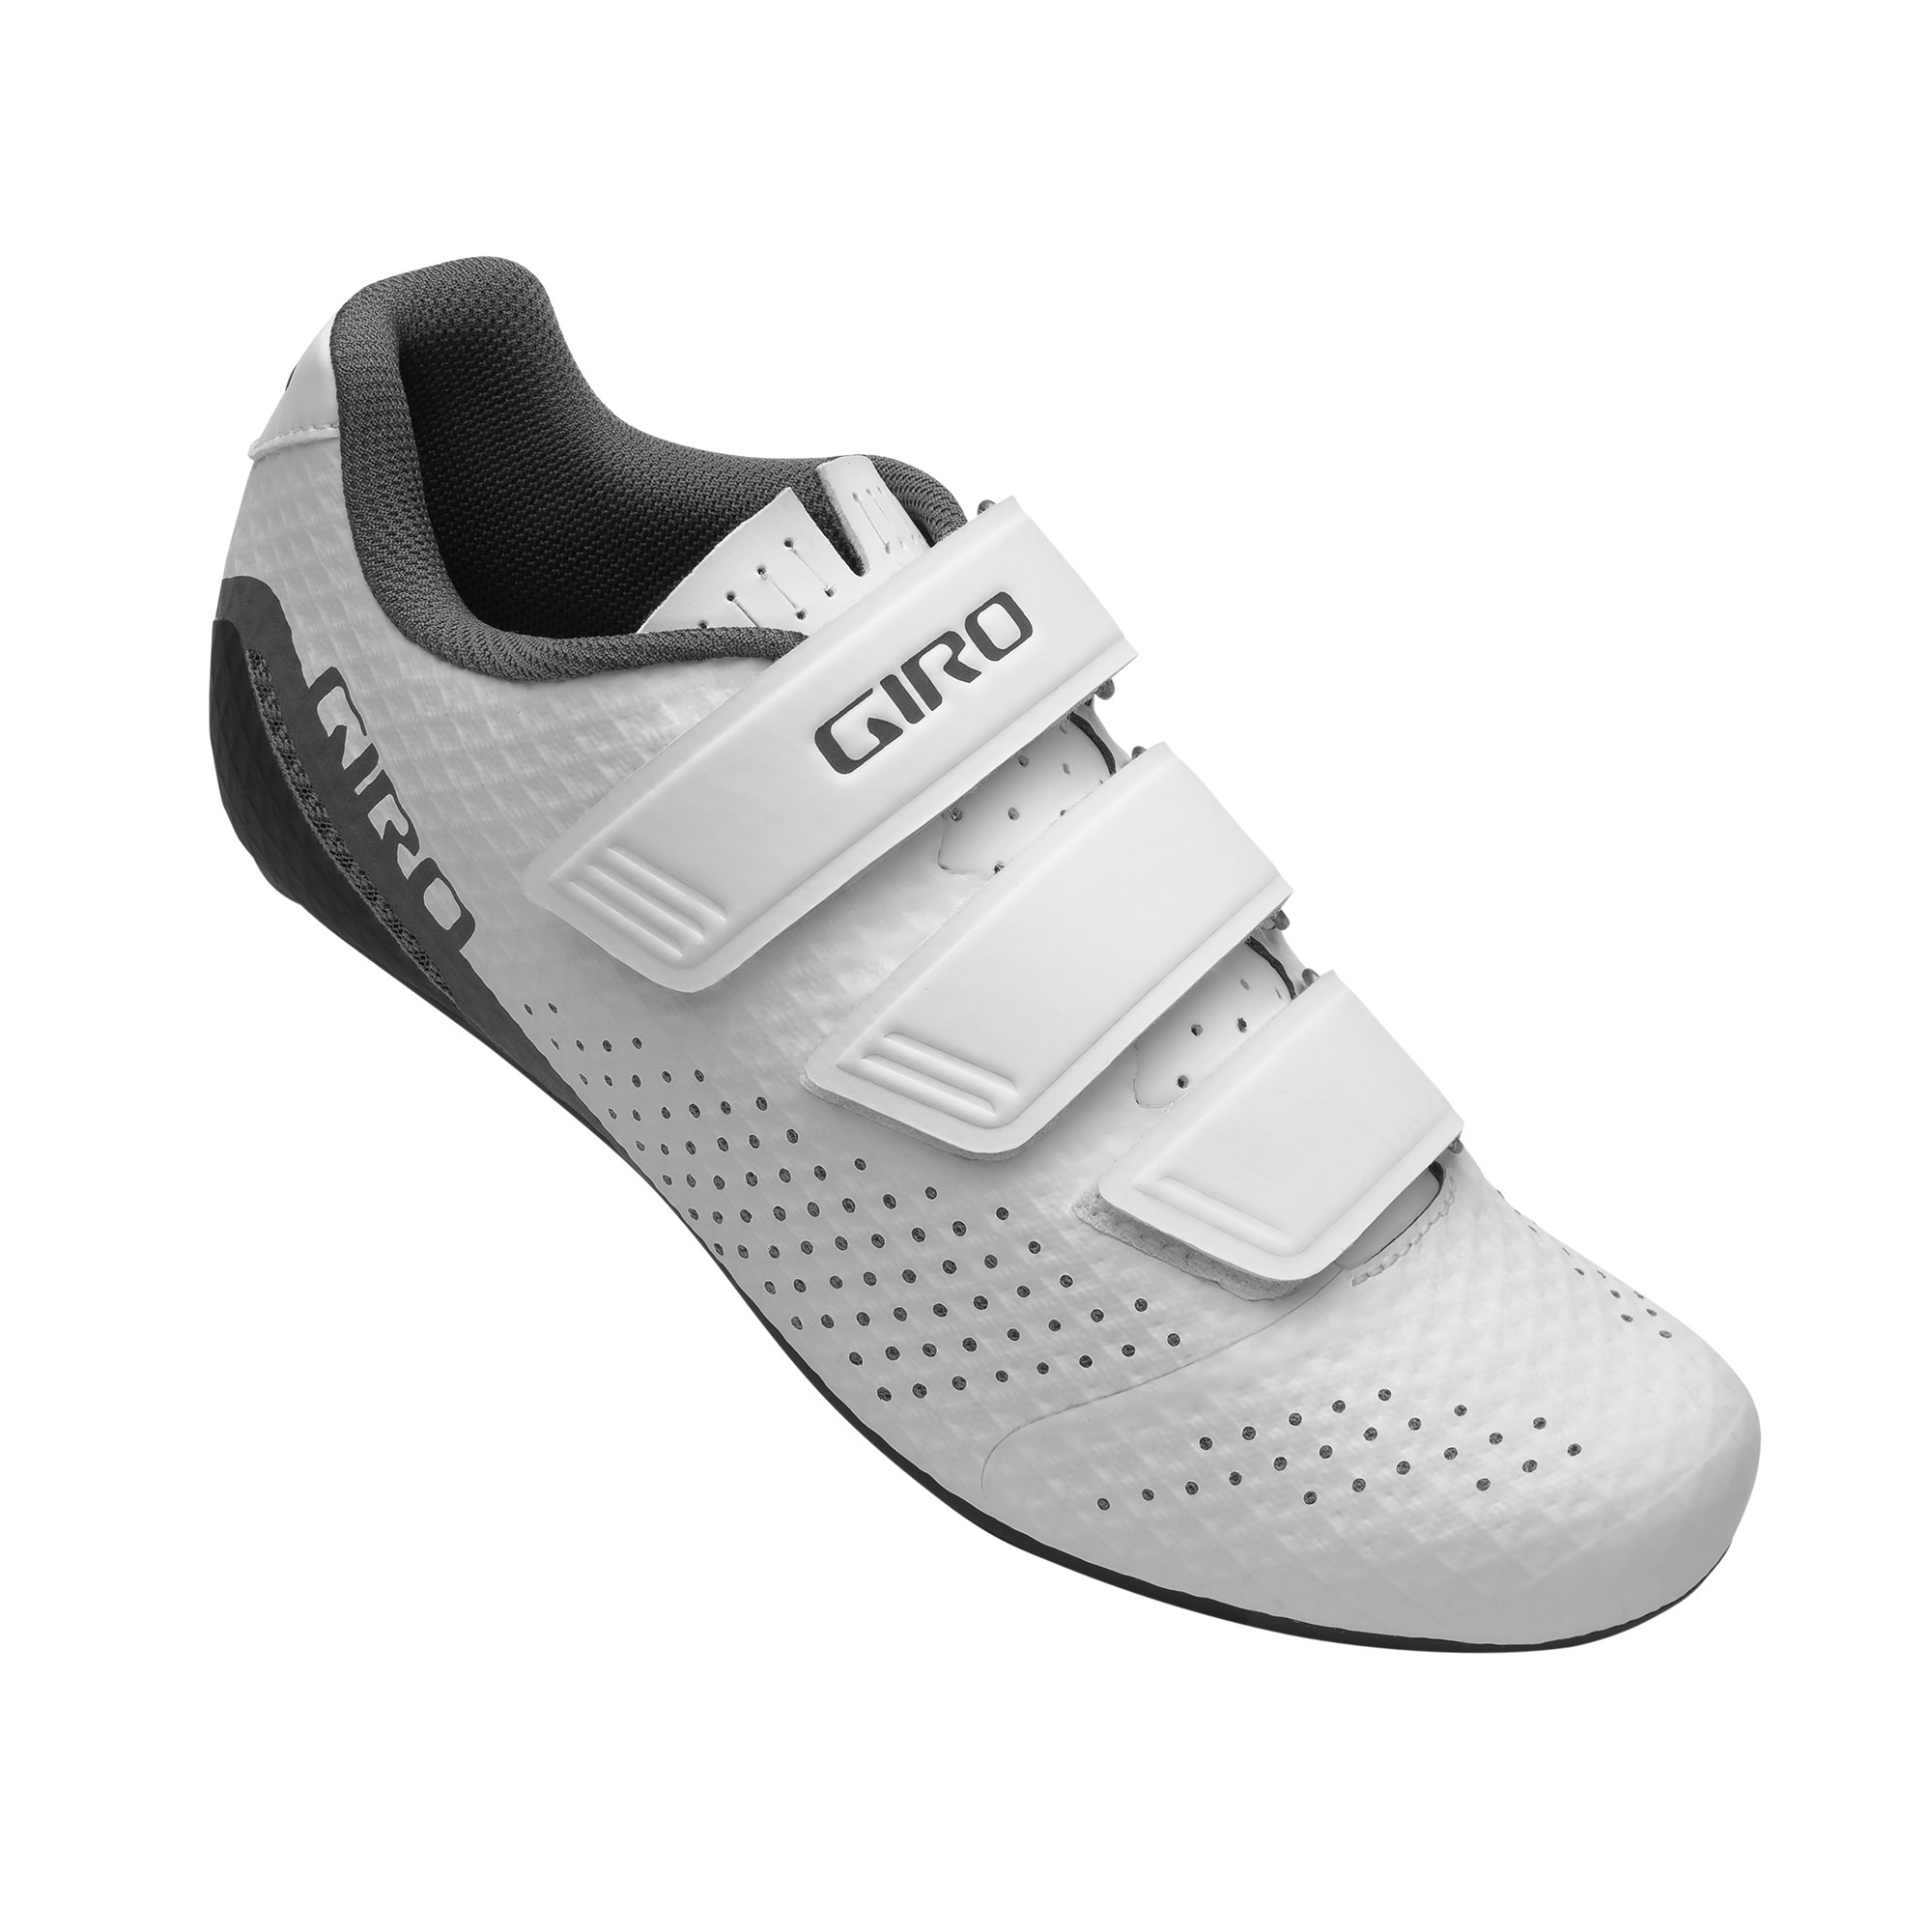 Giro Women's Stylus Shoe